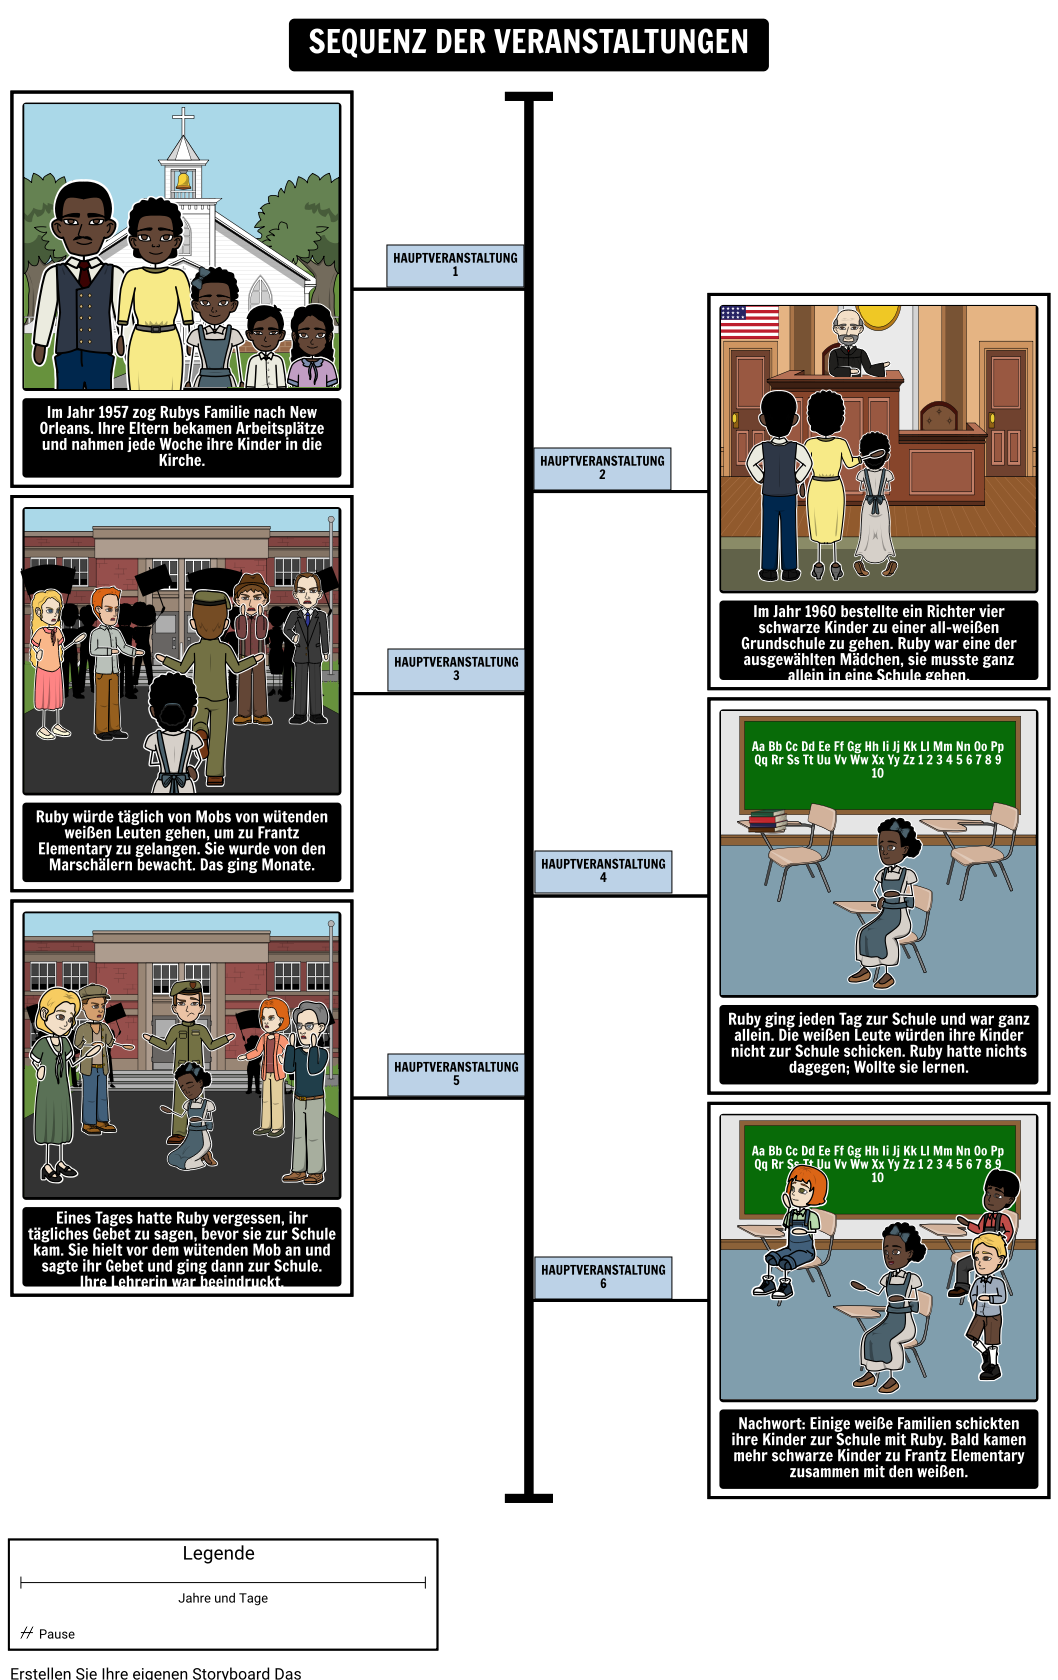 Die Geschichte der Ruby Bridges - Sequence